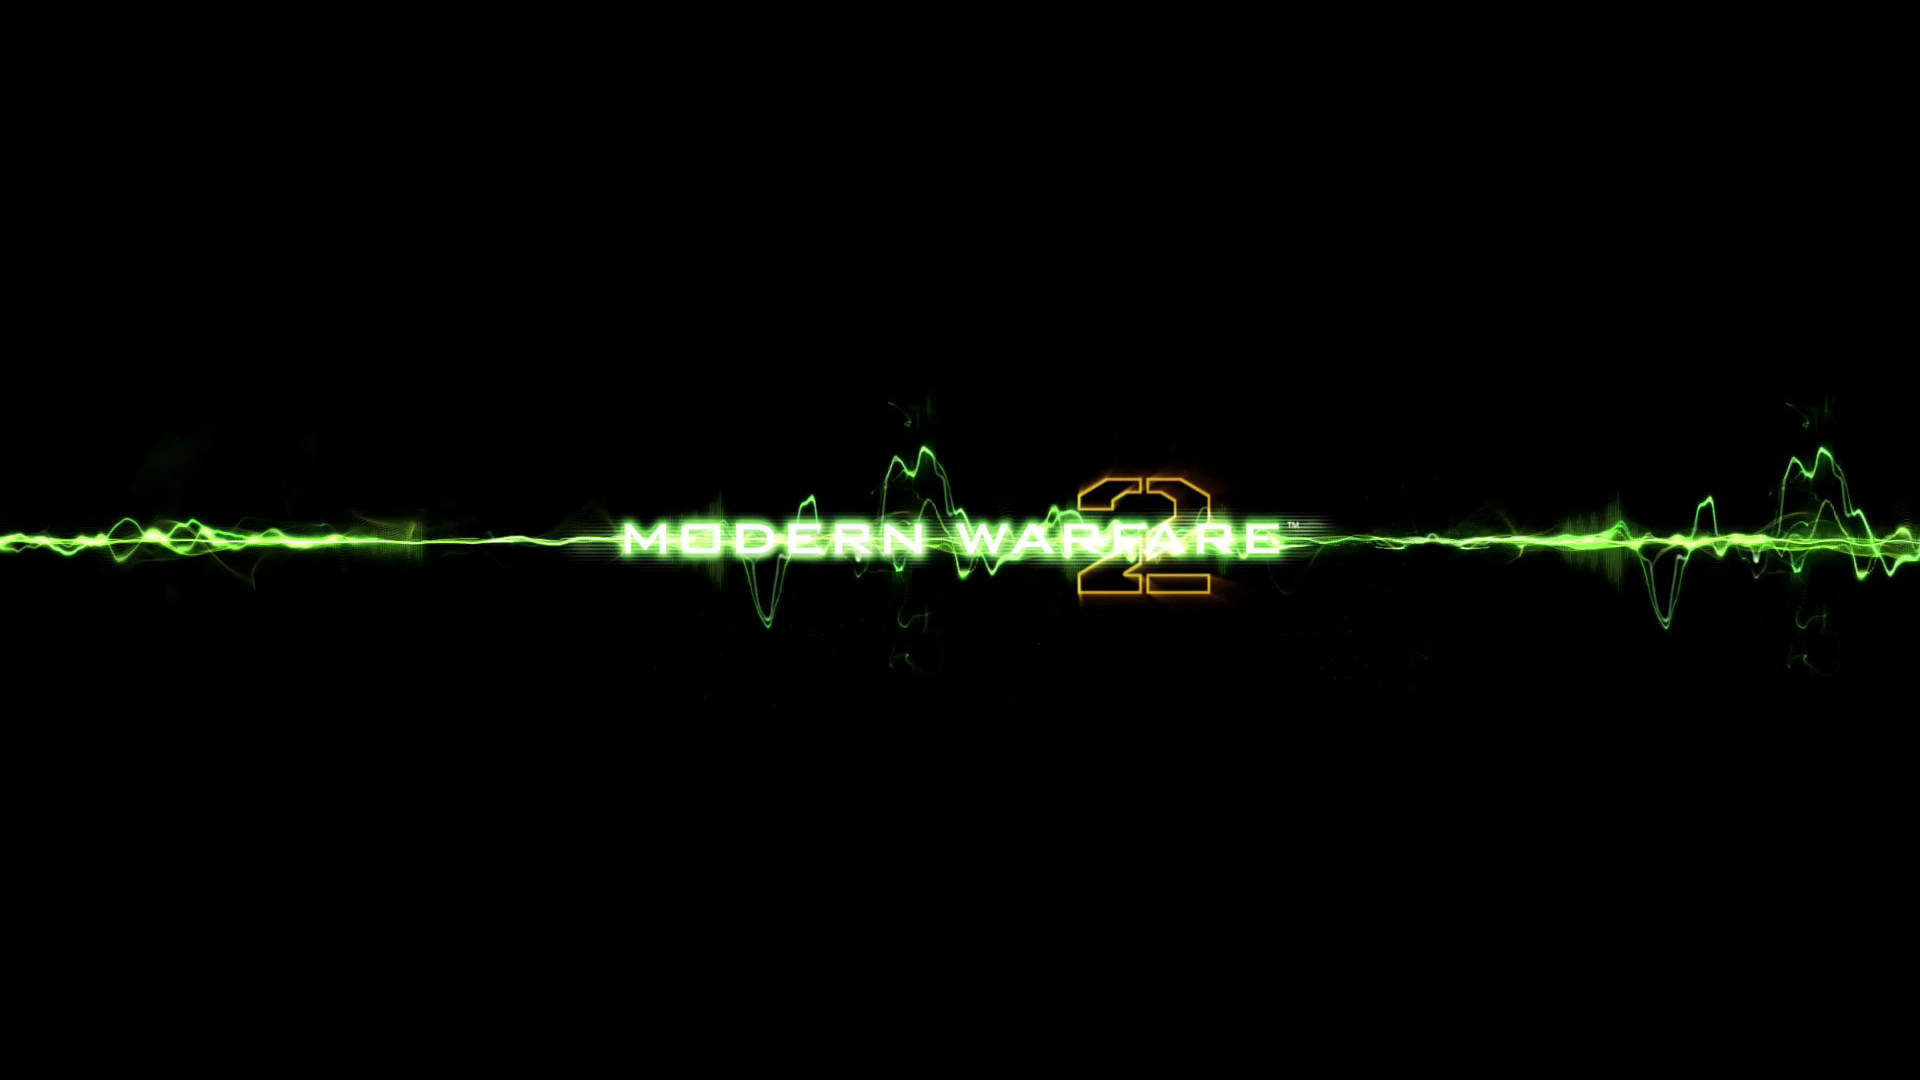 logo, green, call of duty, modern warfare 2